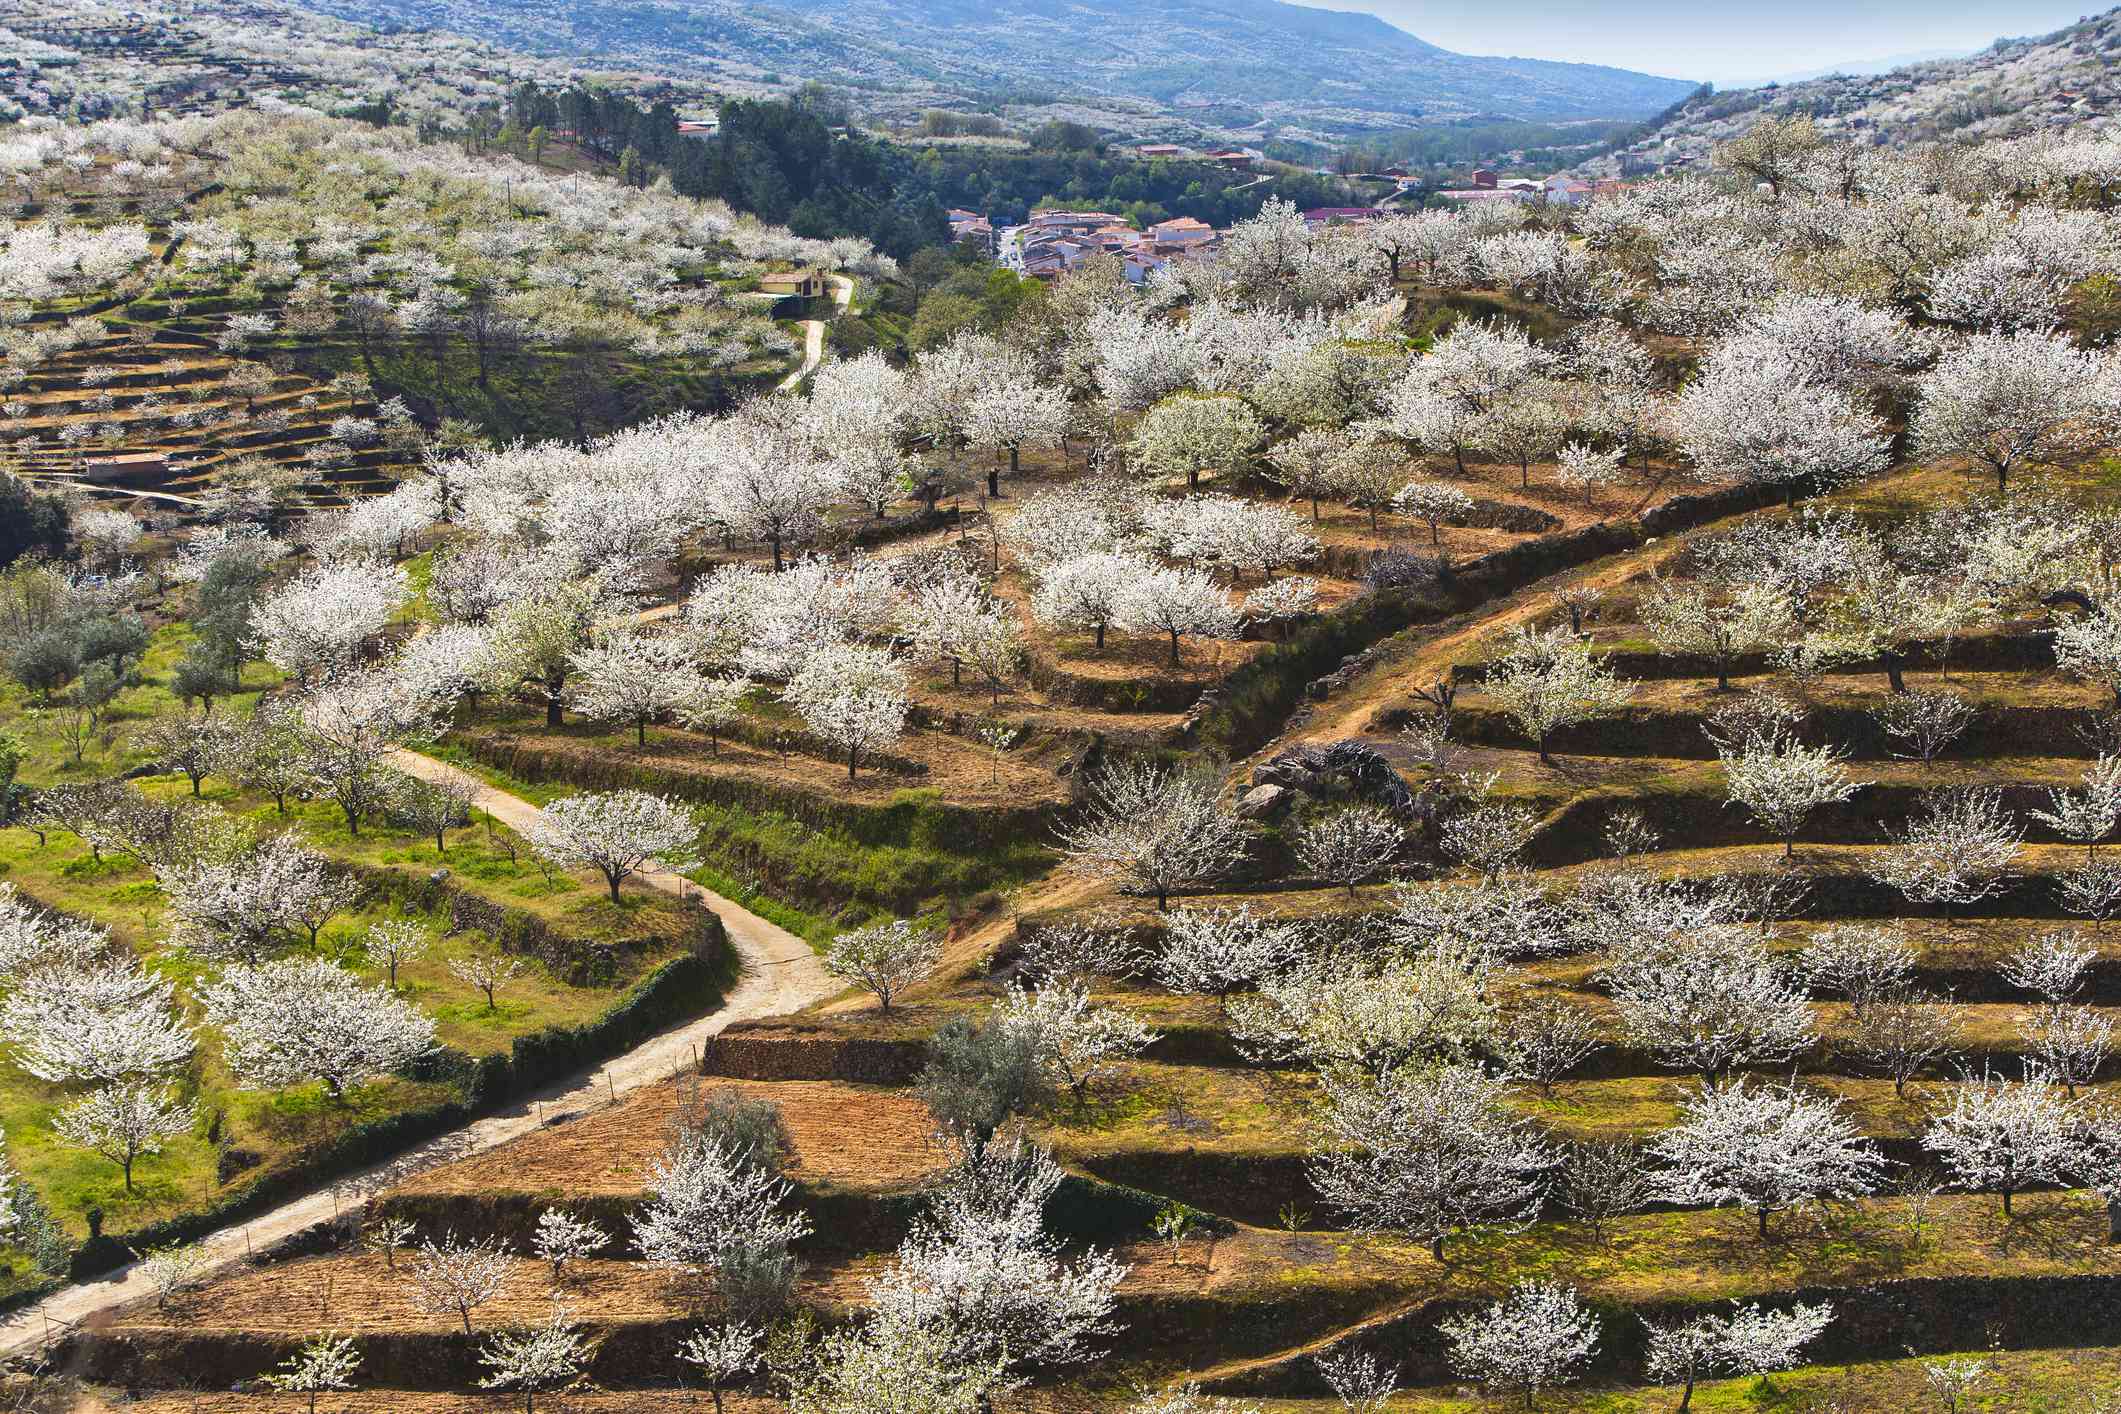 Cerezos blancos en flor que florecen en un jardín en terrazas excavado en las montañas del Valle del Jerte